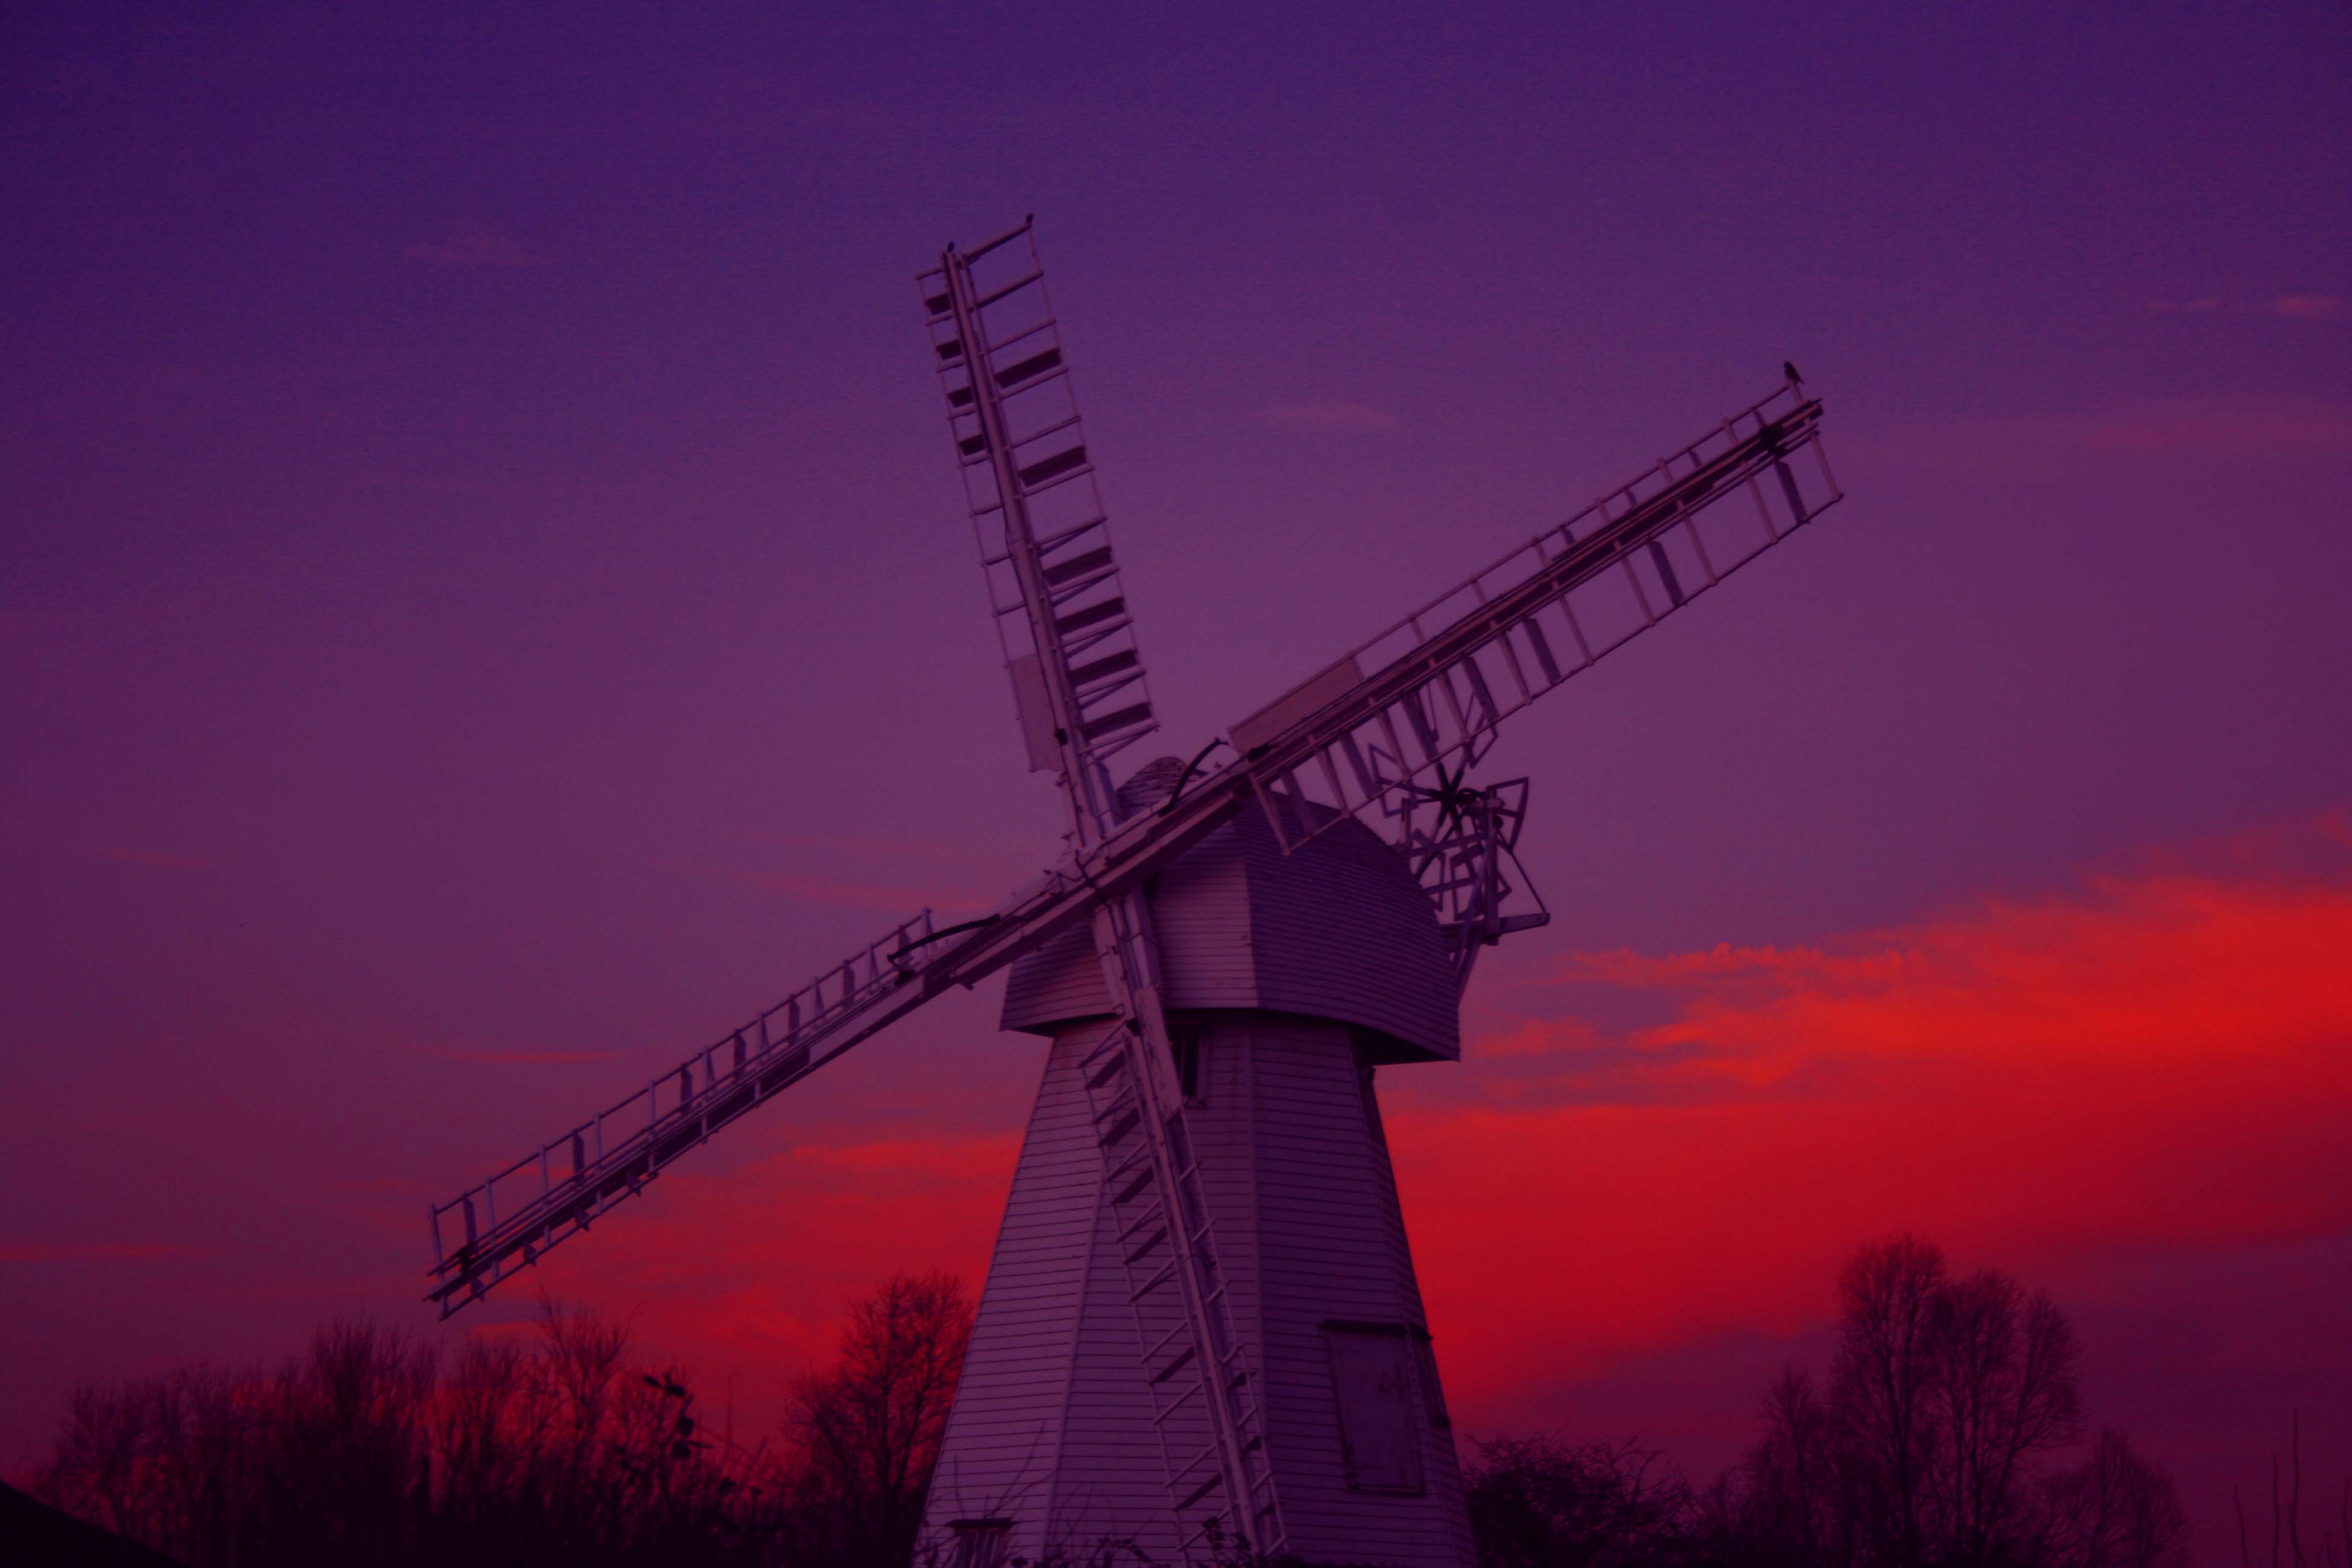 White Windmill at sunset